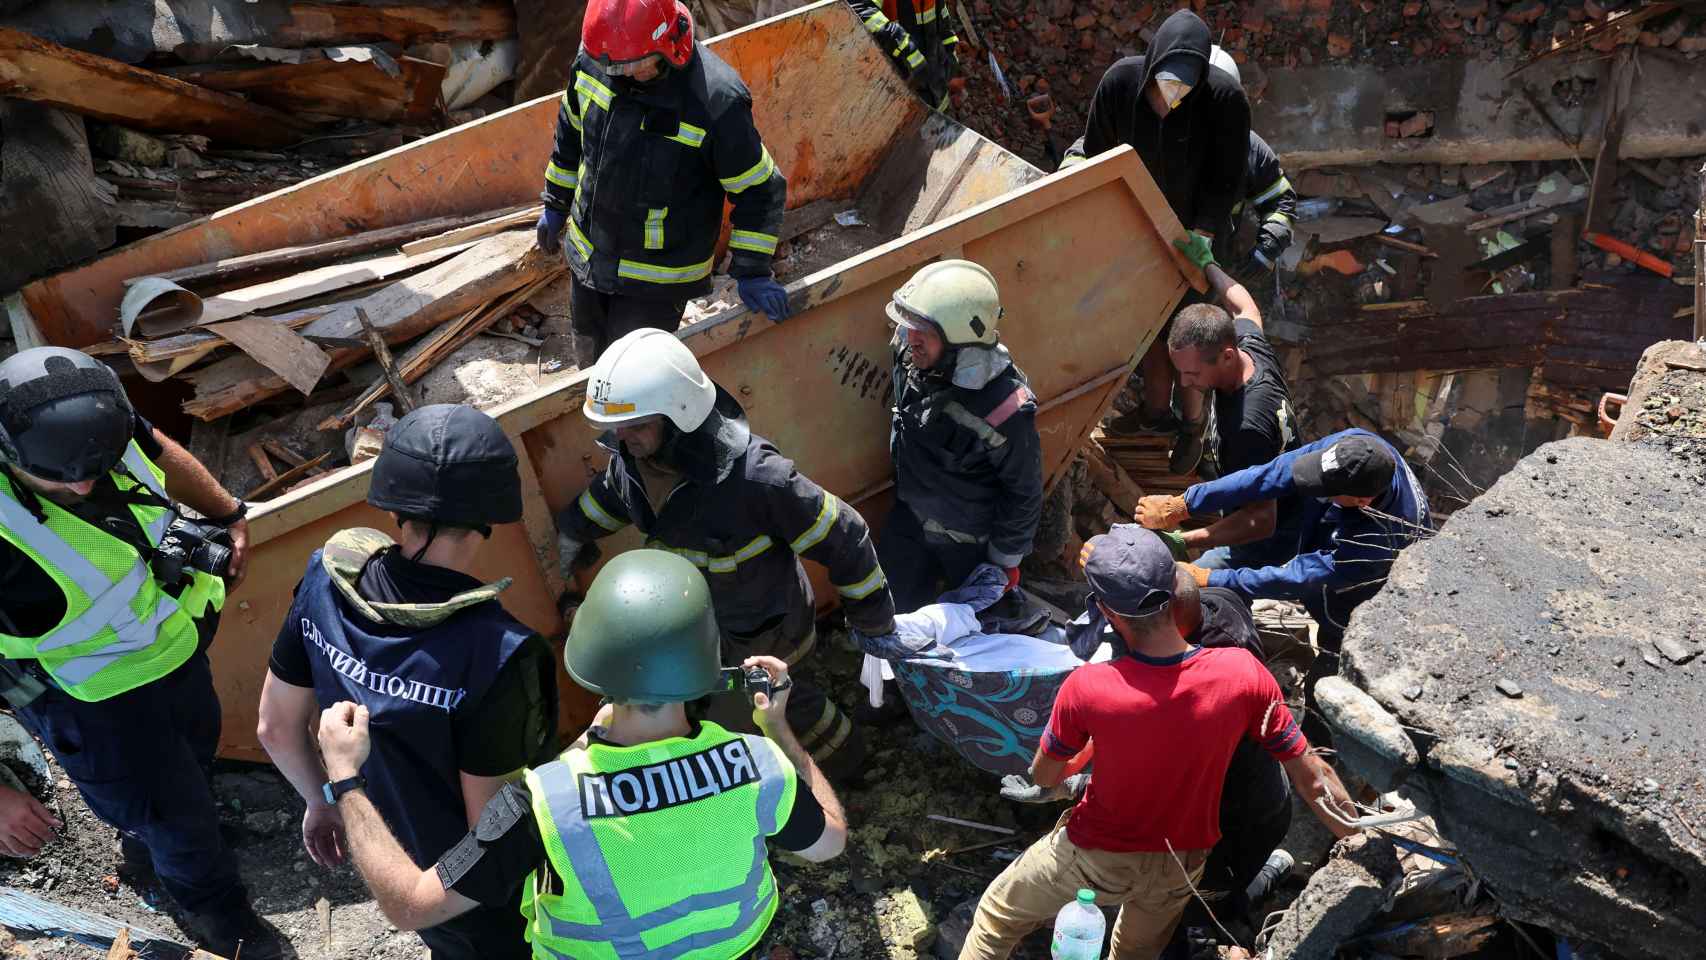 Operarios trabajando para retirar el cadáver de una mujer ucraniana entre los escombros en Járkov.